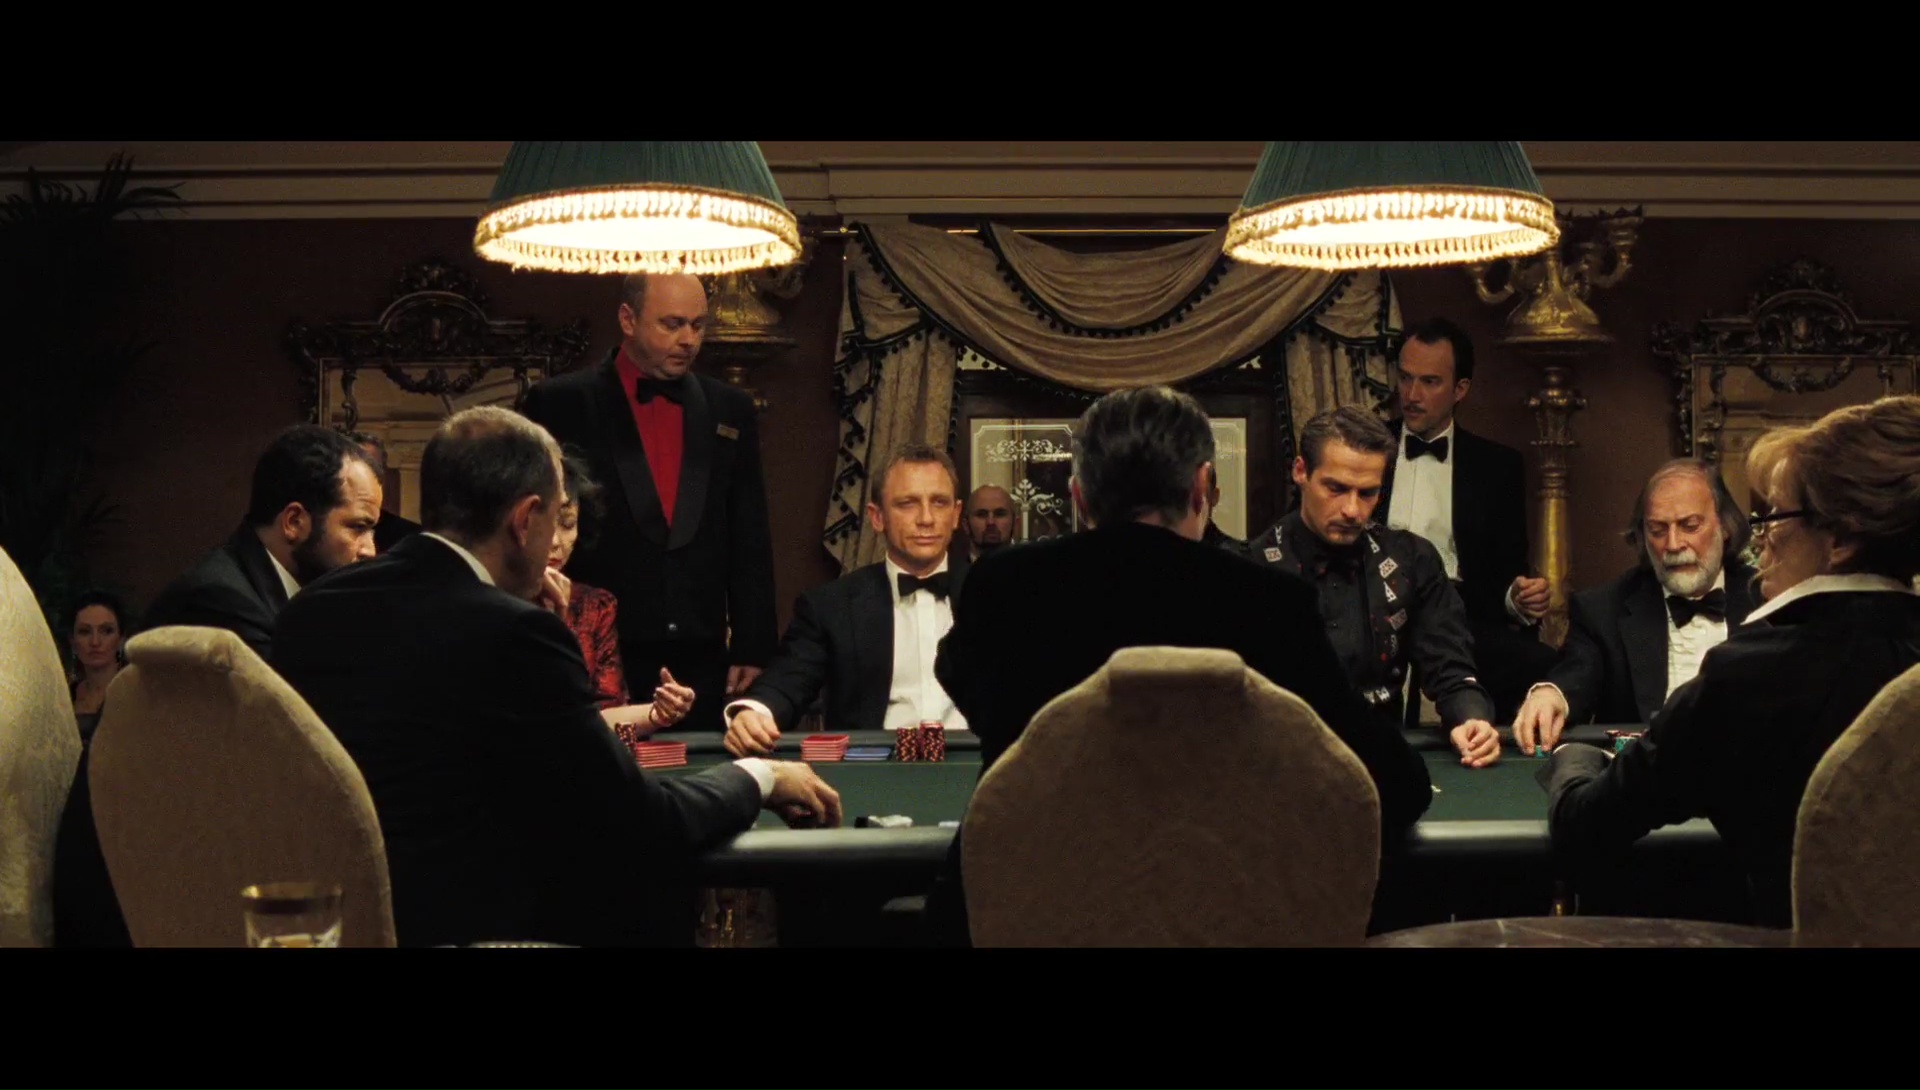 watch 007 casino royale online free putlocker